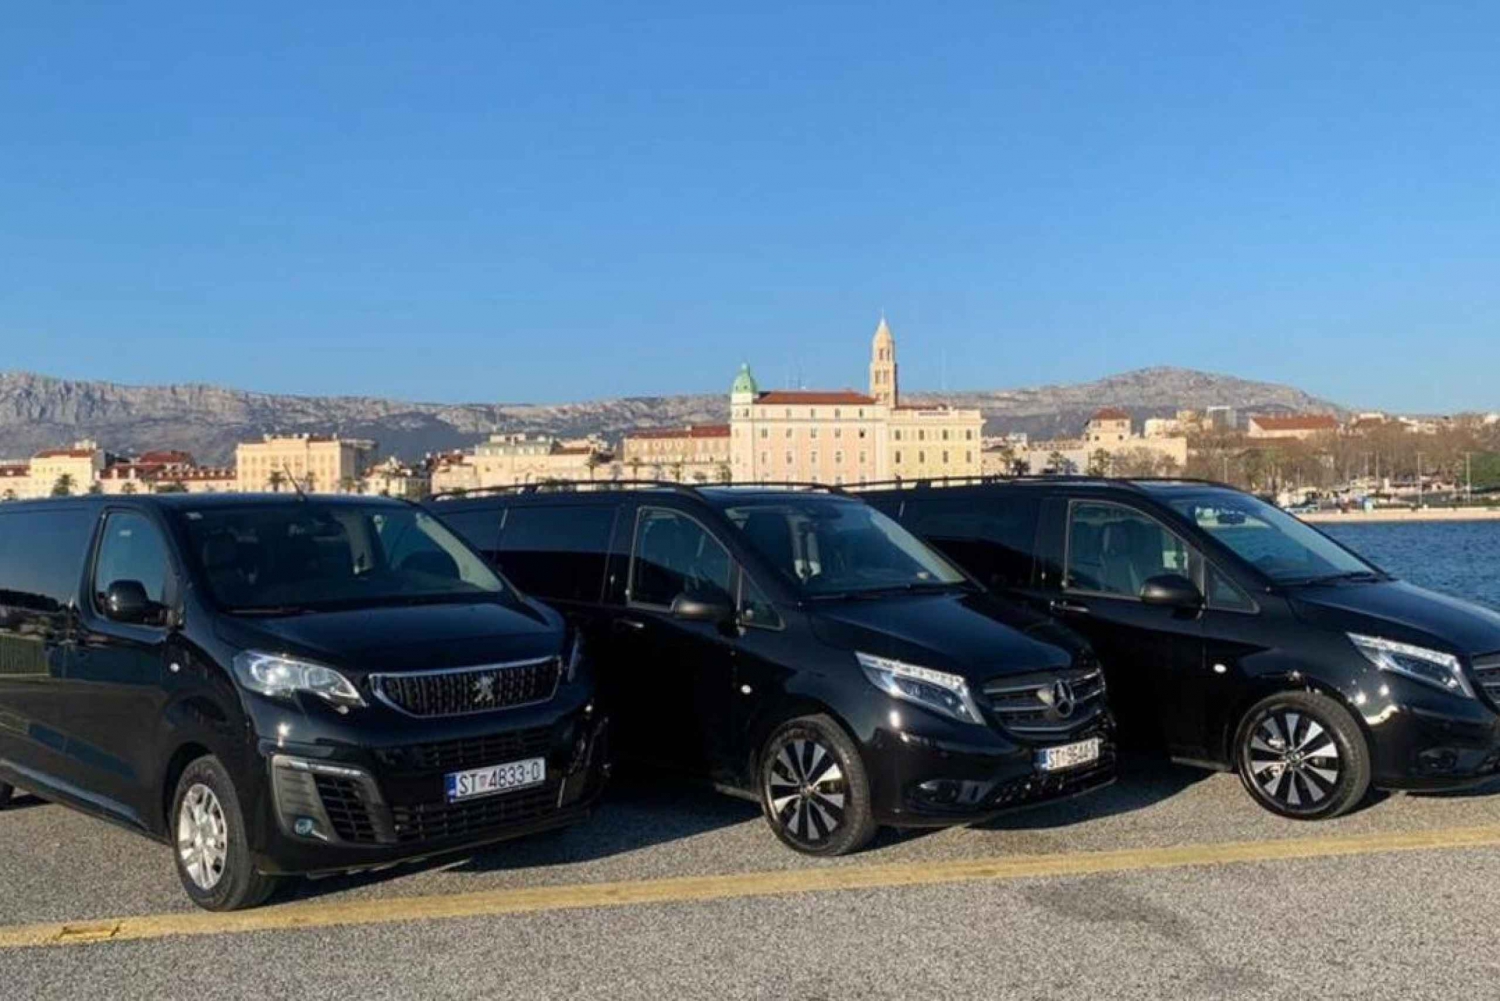 Privat transport fra Split til Dubrovnik i luksusbiler